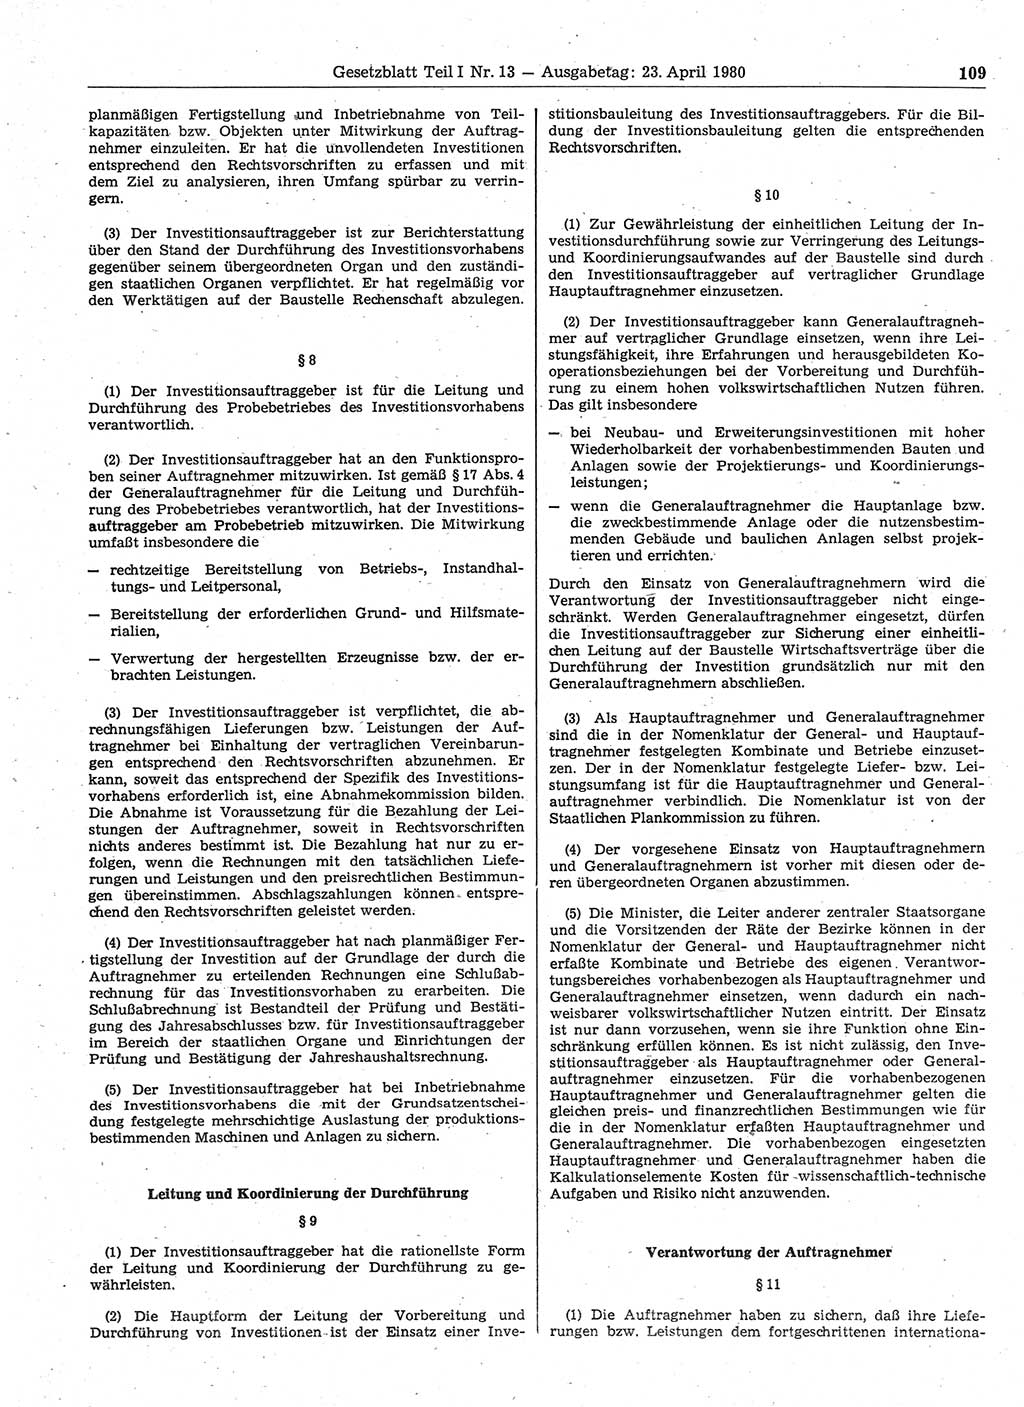 Gesetzblatt (GBl.) der Deutschen Demokratischen Republik (DDR) Teil Ⅰ 1980, Seite 109 (GBl. DDR Ⅰ 1980, S. 109)